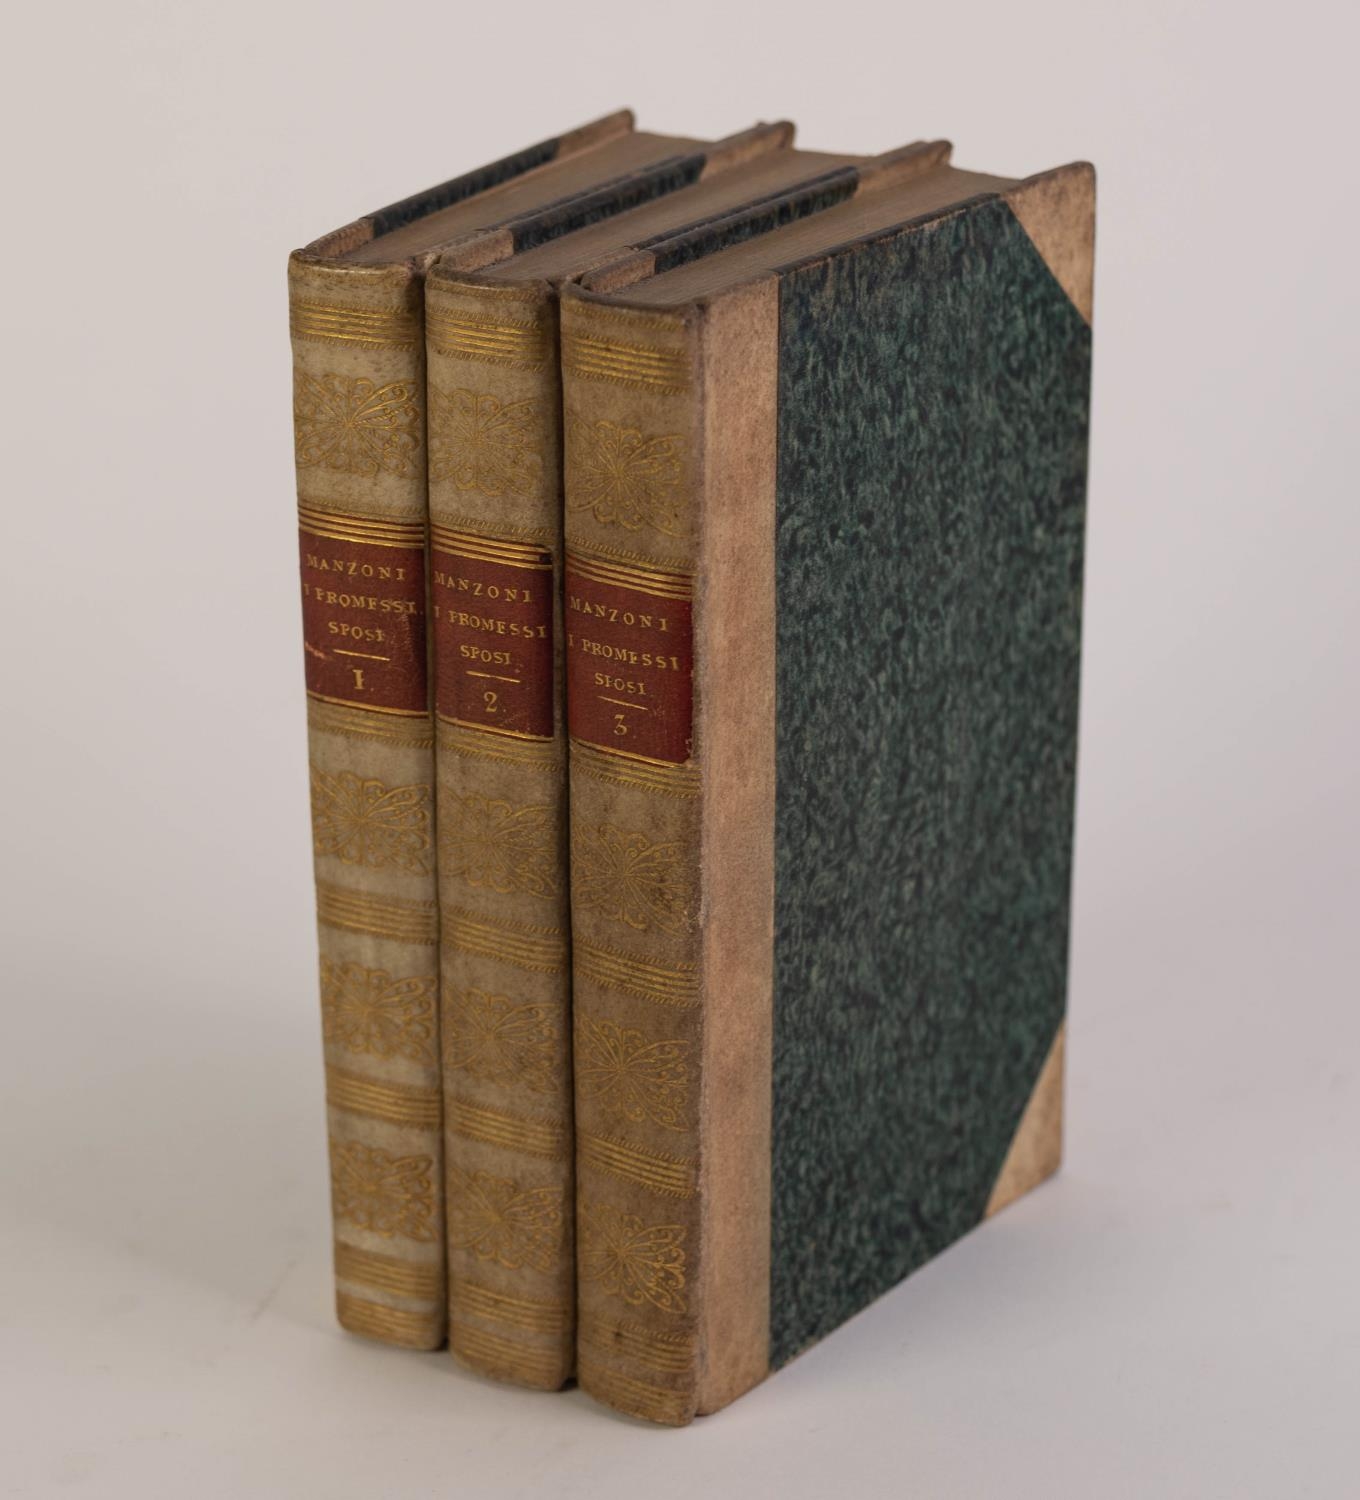 Da Alessandro Manzoni - I Promessi Sposi, Storia Milanese Del Secolo xvii, 3rd Edition 1827, Parigi.